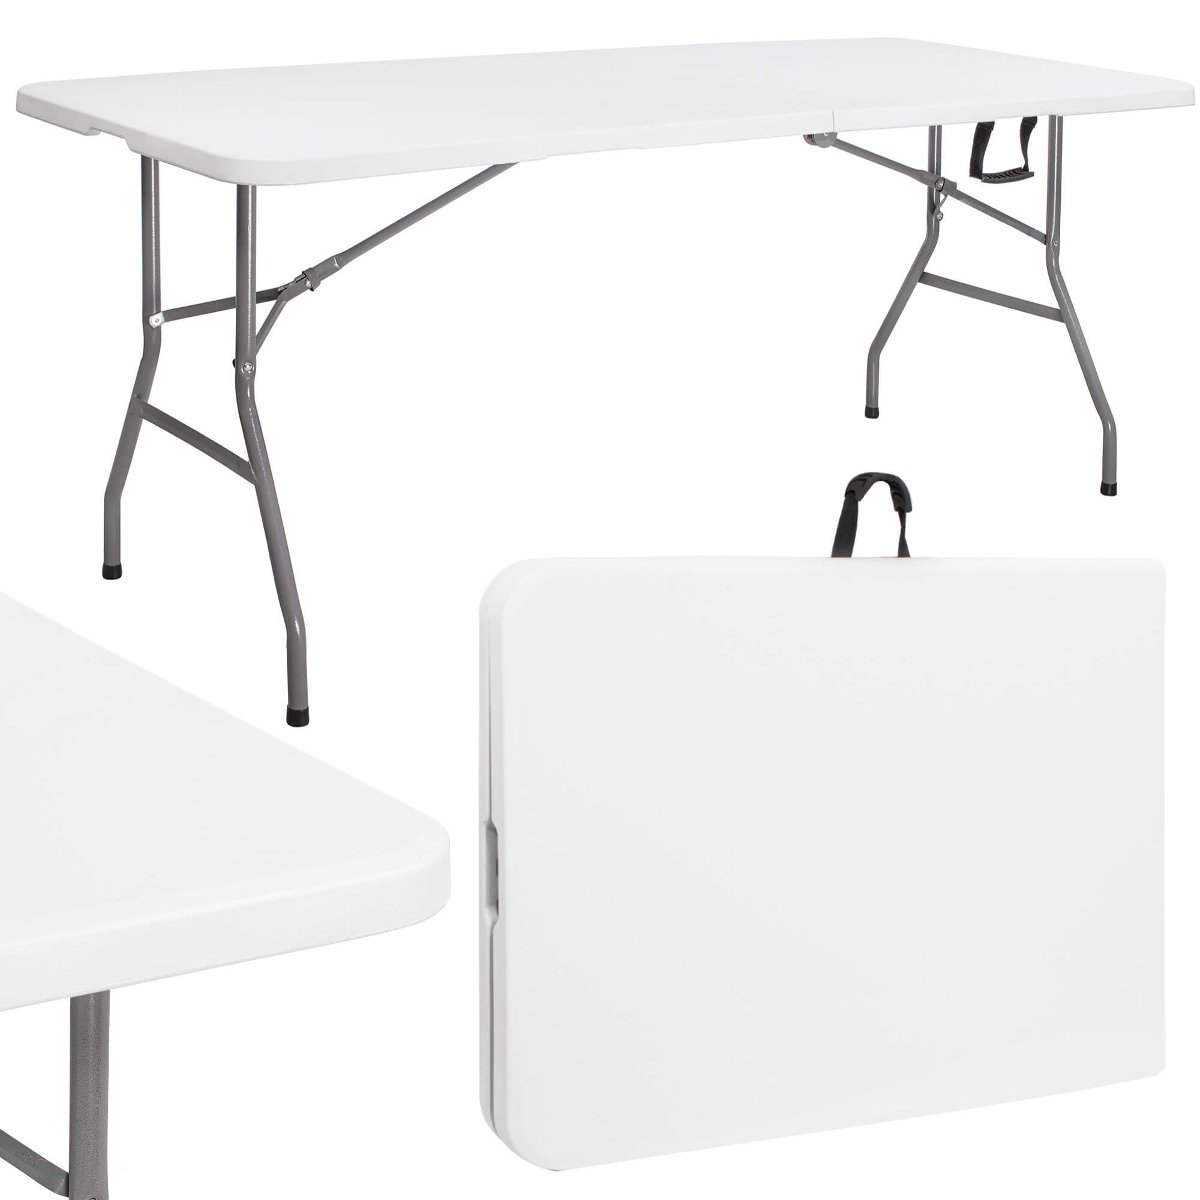 Stół cateringowy 180 cm bankietowy składany w walizkę stolik ogrodowy, turystyczny biały GF0051